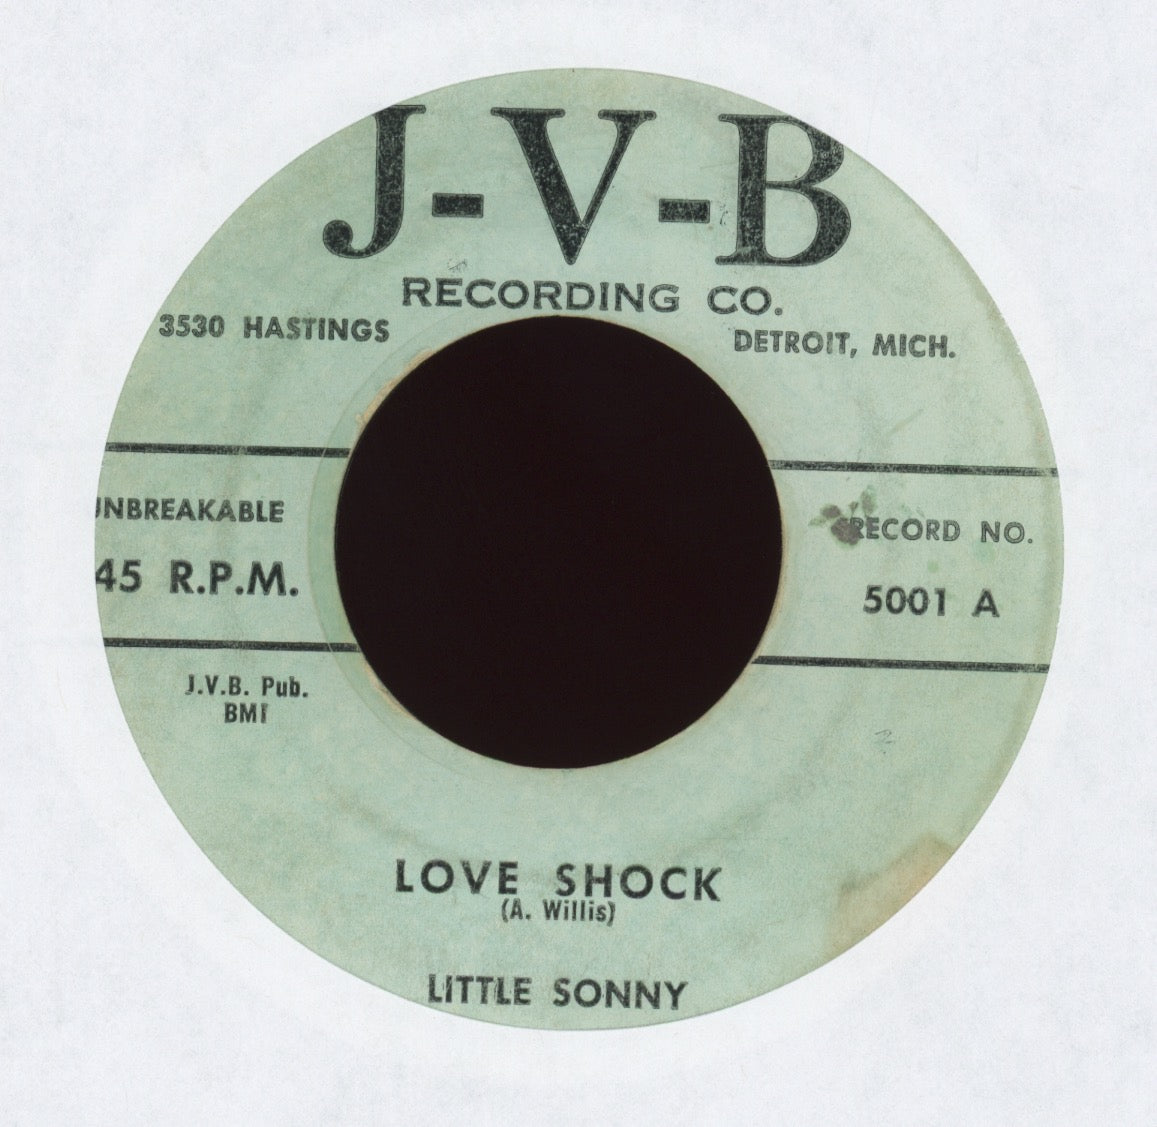 Little Sonny - Love Shock on J-V-B